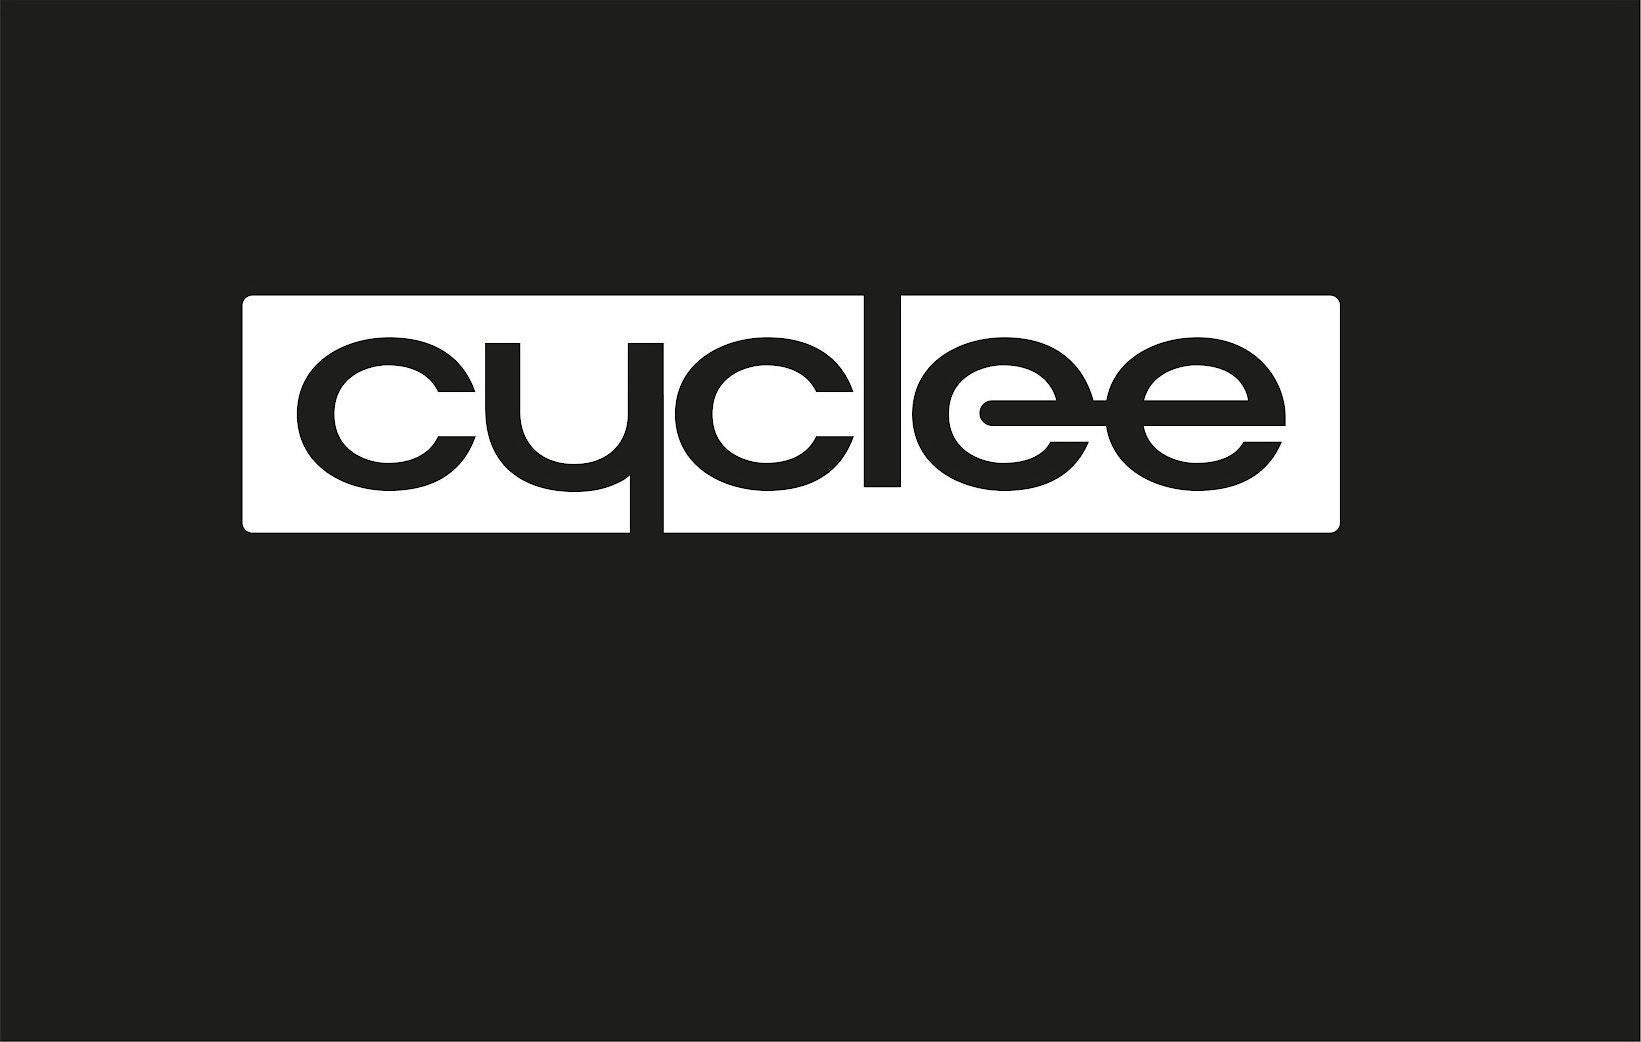  CYCLEE